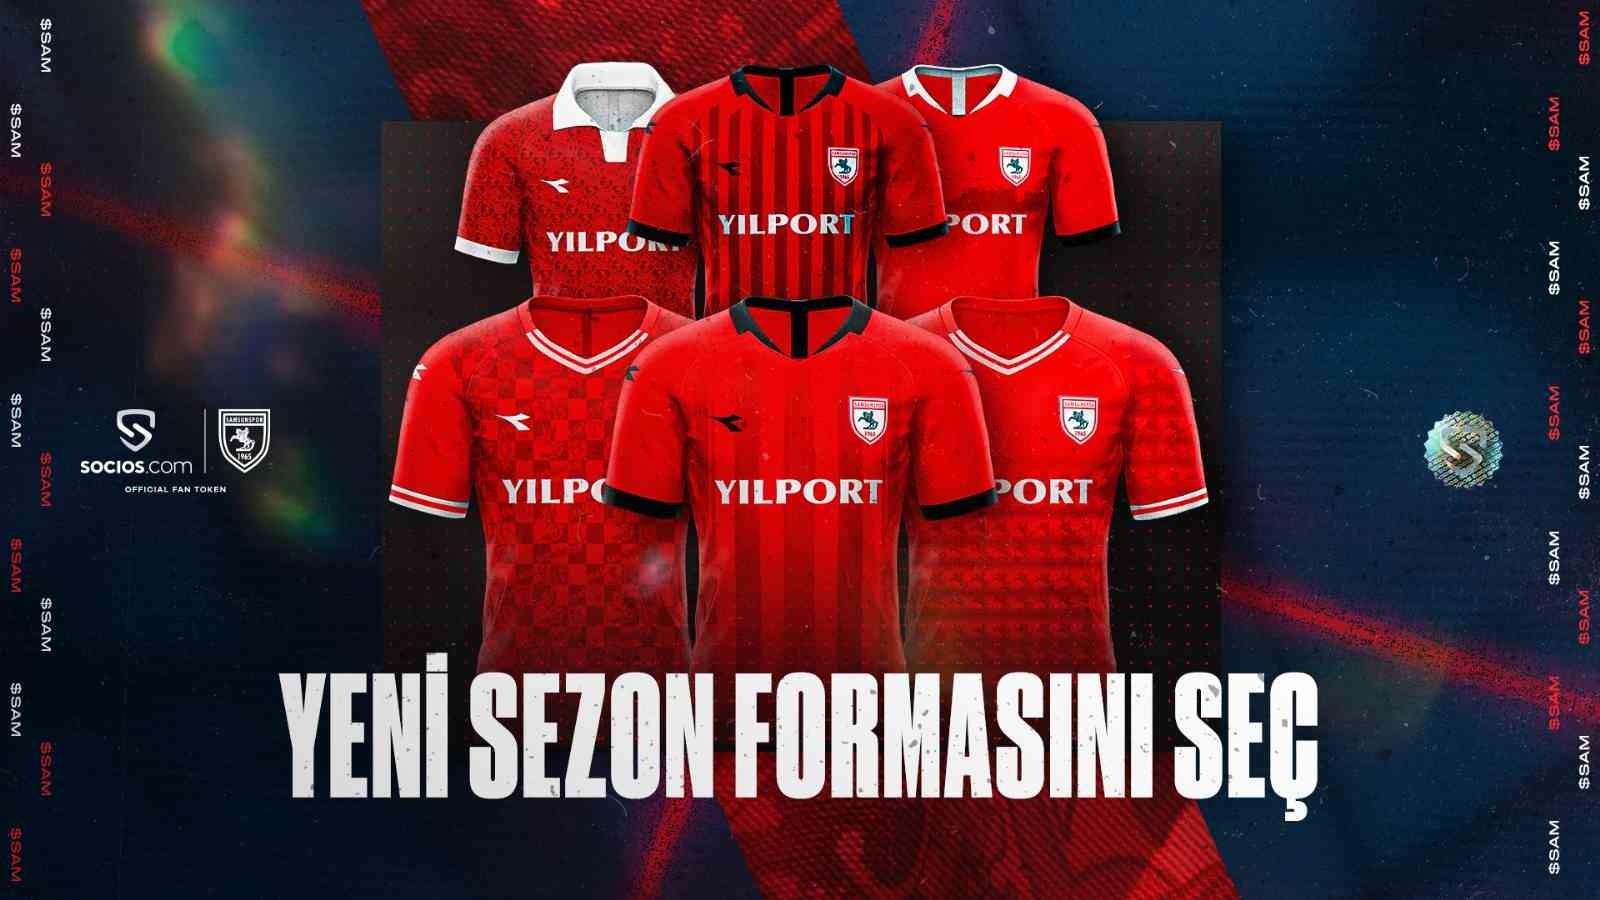 Yılport Samsunspor, Resmi Fan Token Partneri Socios.com ile bir ilke imza atıyor. Karadeniz ekibi, 2022-2023 futbol sezonunda Futbol A Takımı’nın ...